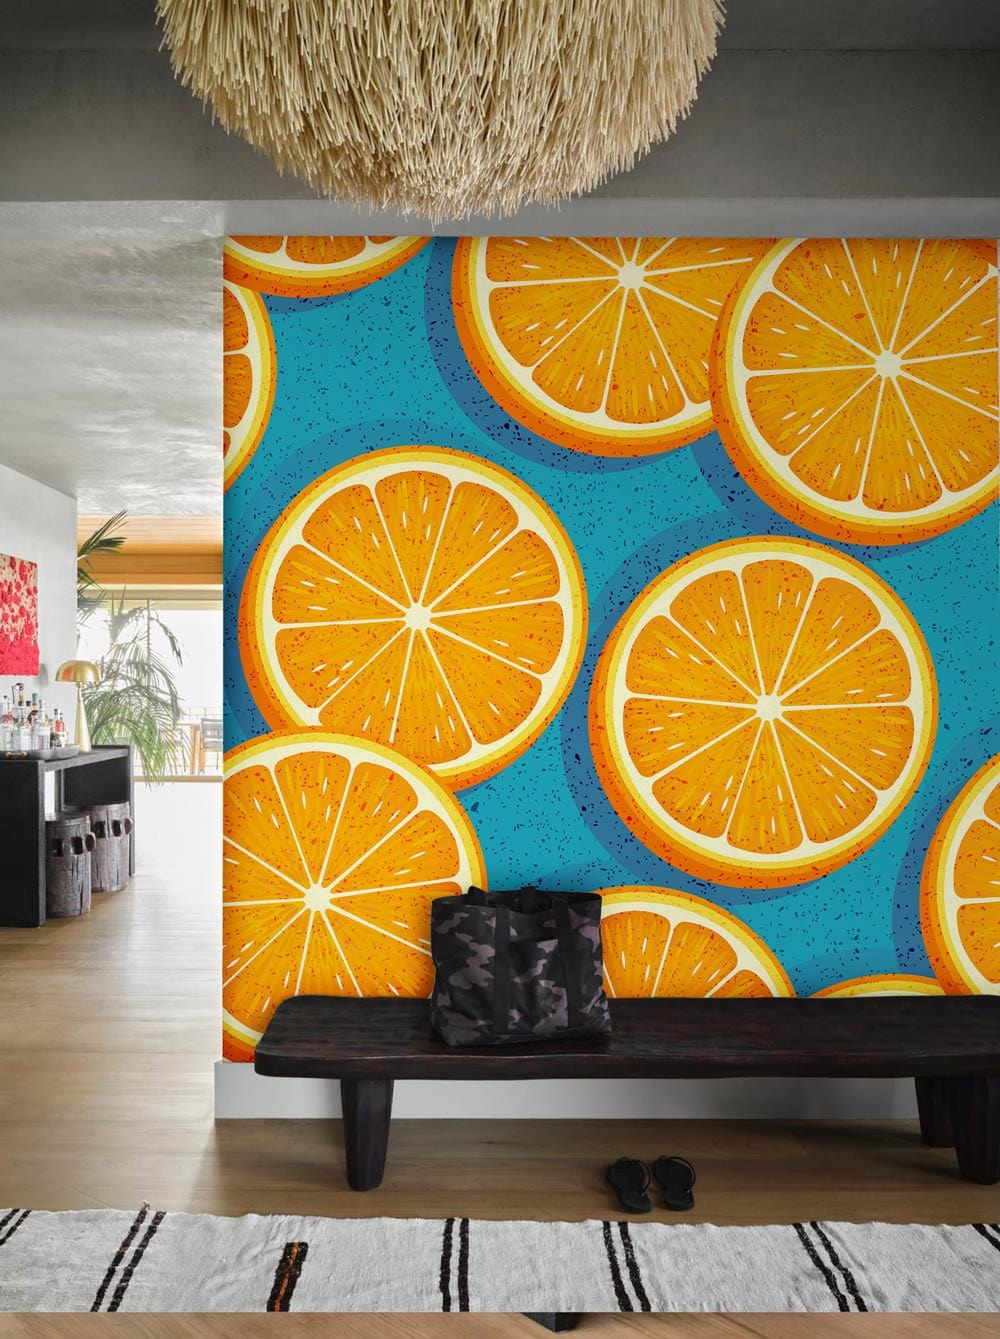 wallpaper with a circular, large orange fruit design